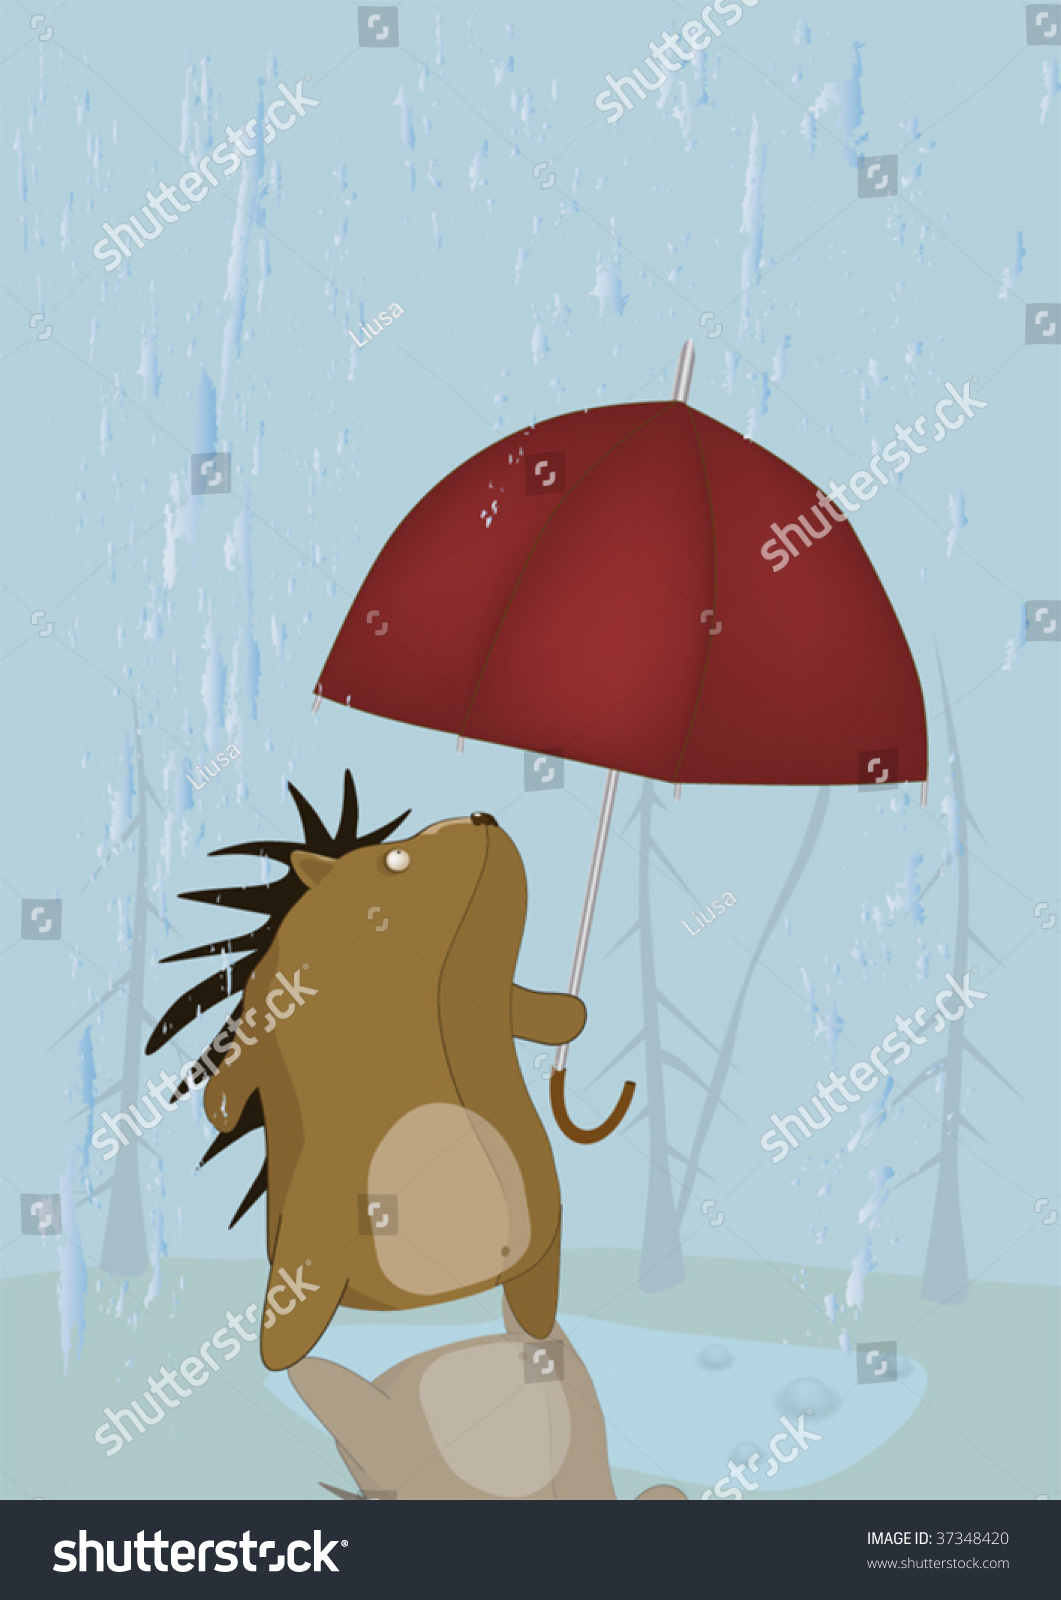 Ежик дождь. Ежик и дождь. Еж под зонтом. Ежик под зонтиком. Ежик под дождем.